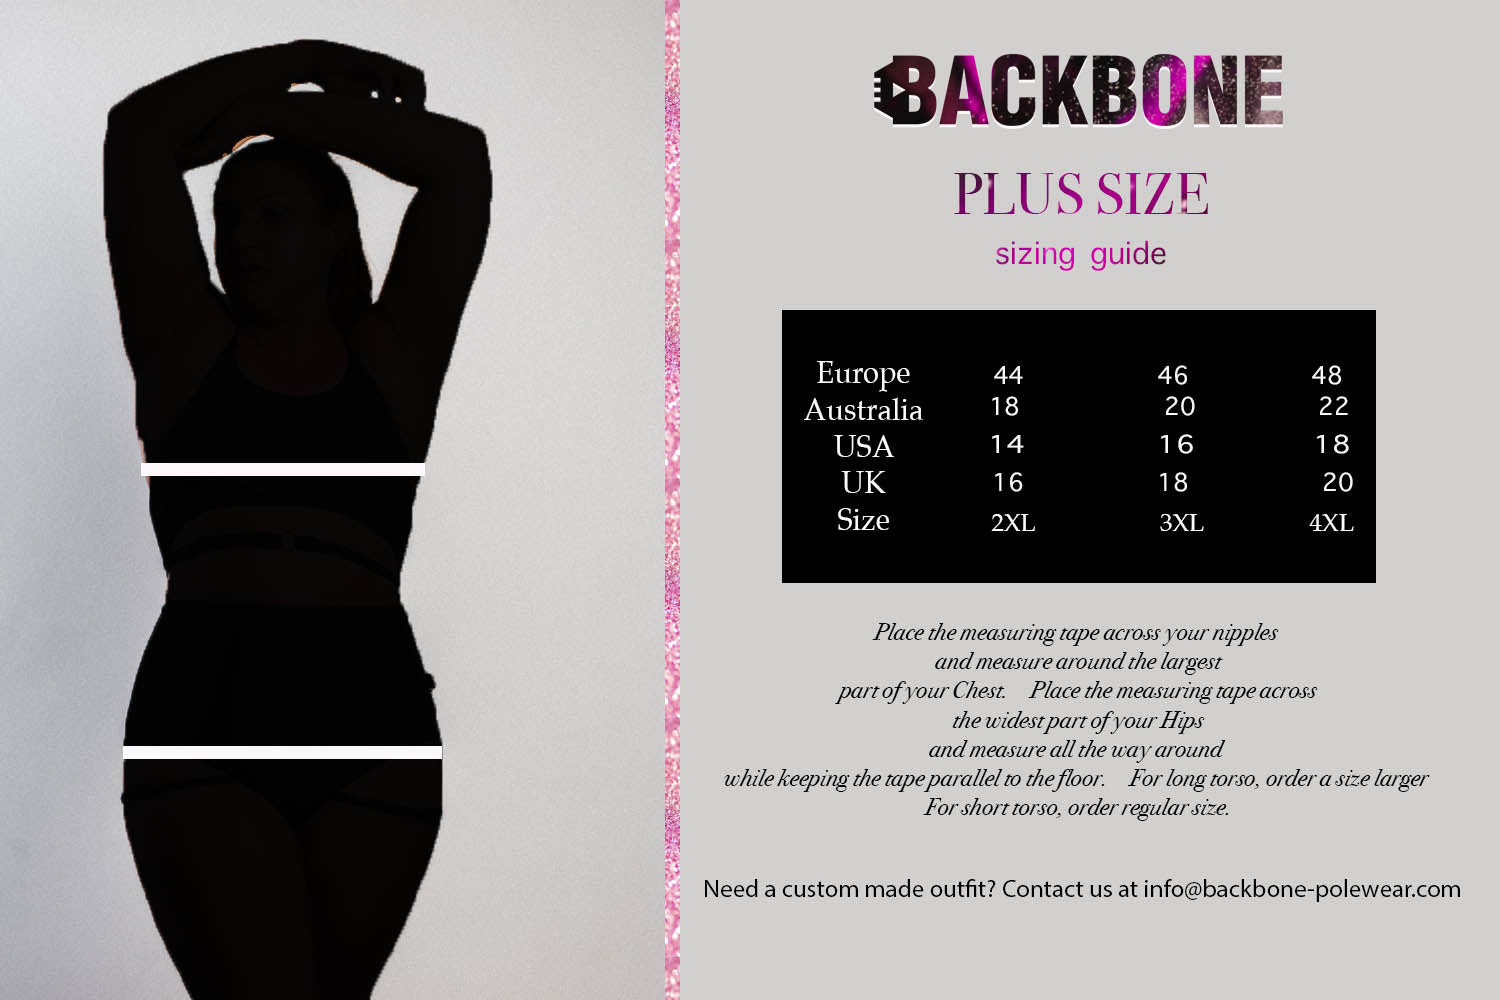 Backbone Polewear